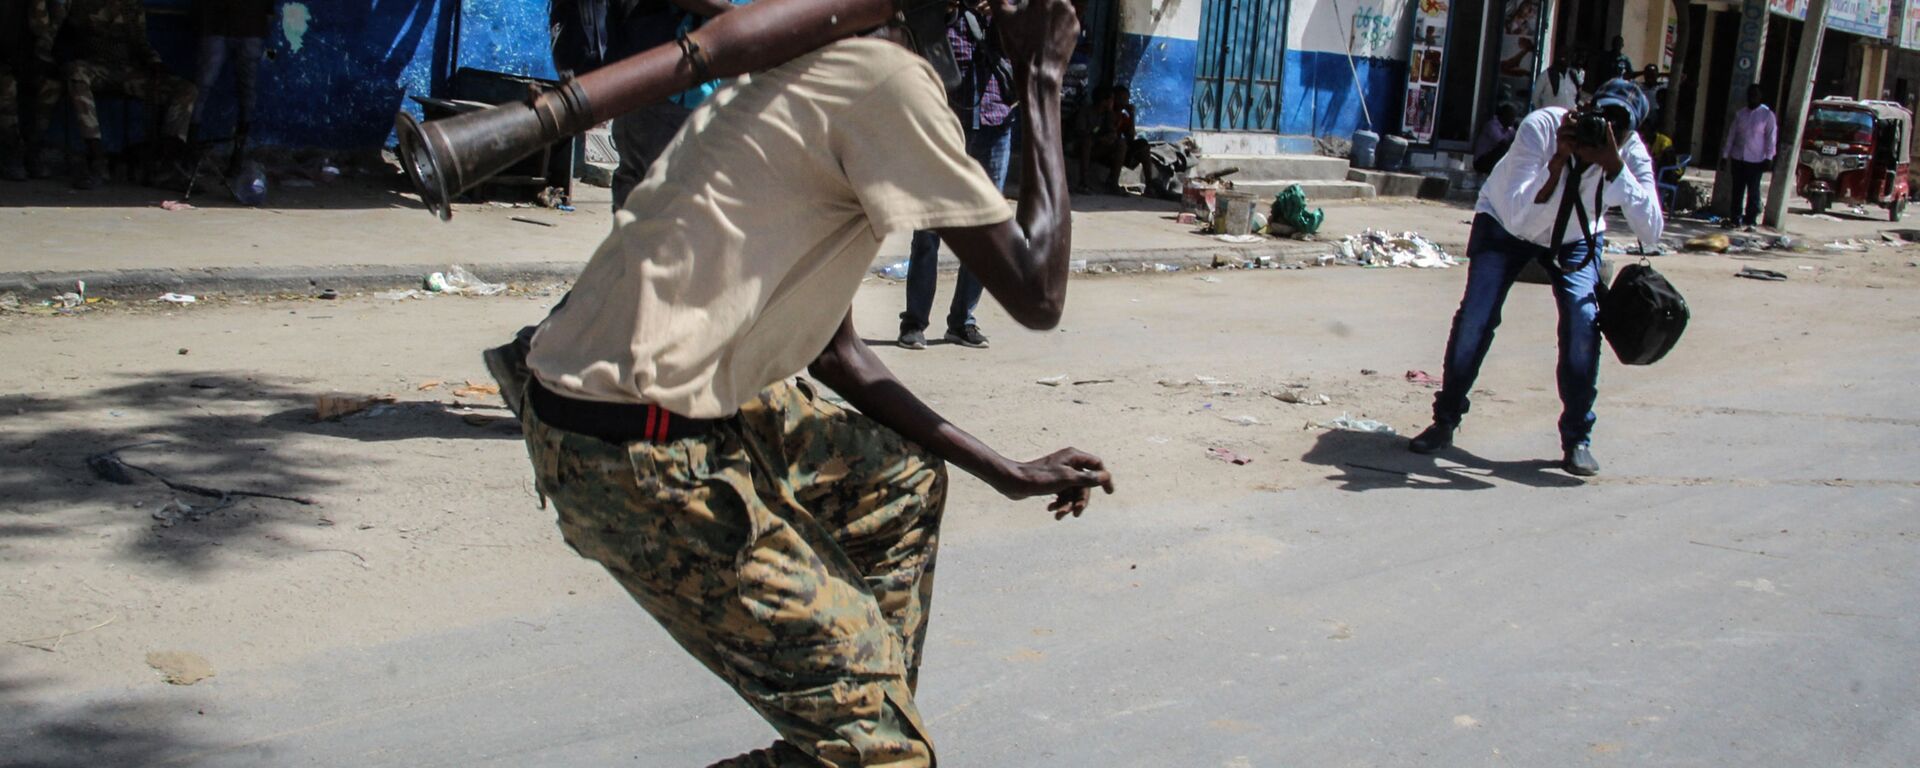 شخص يلتقط صورة لعضو في القوة العسكرية الصومالية يدعم المناوئين للحكومة أثناء وقوفه في أحد شوارع مقديشو، الصومال، 25 أبريل 2021 - سبوتنيك عربي, 1920, 28.12.2021